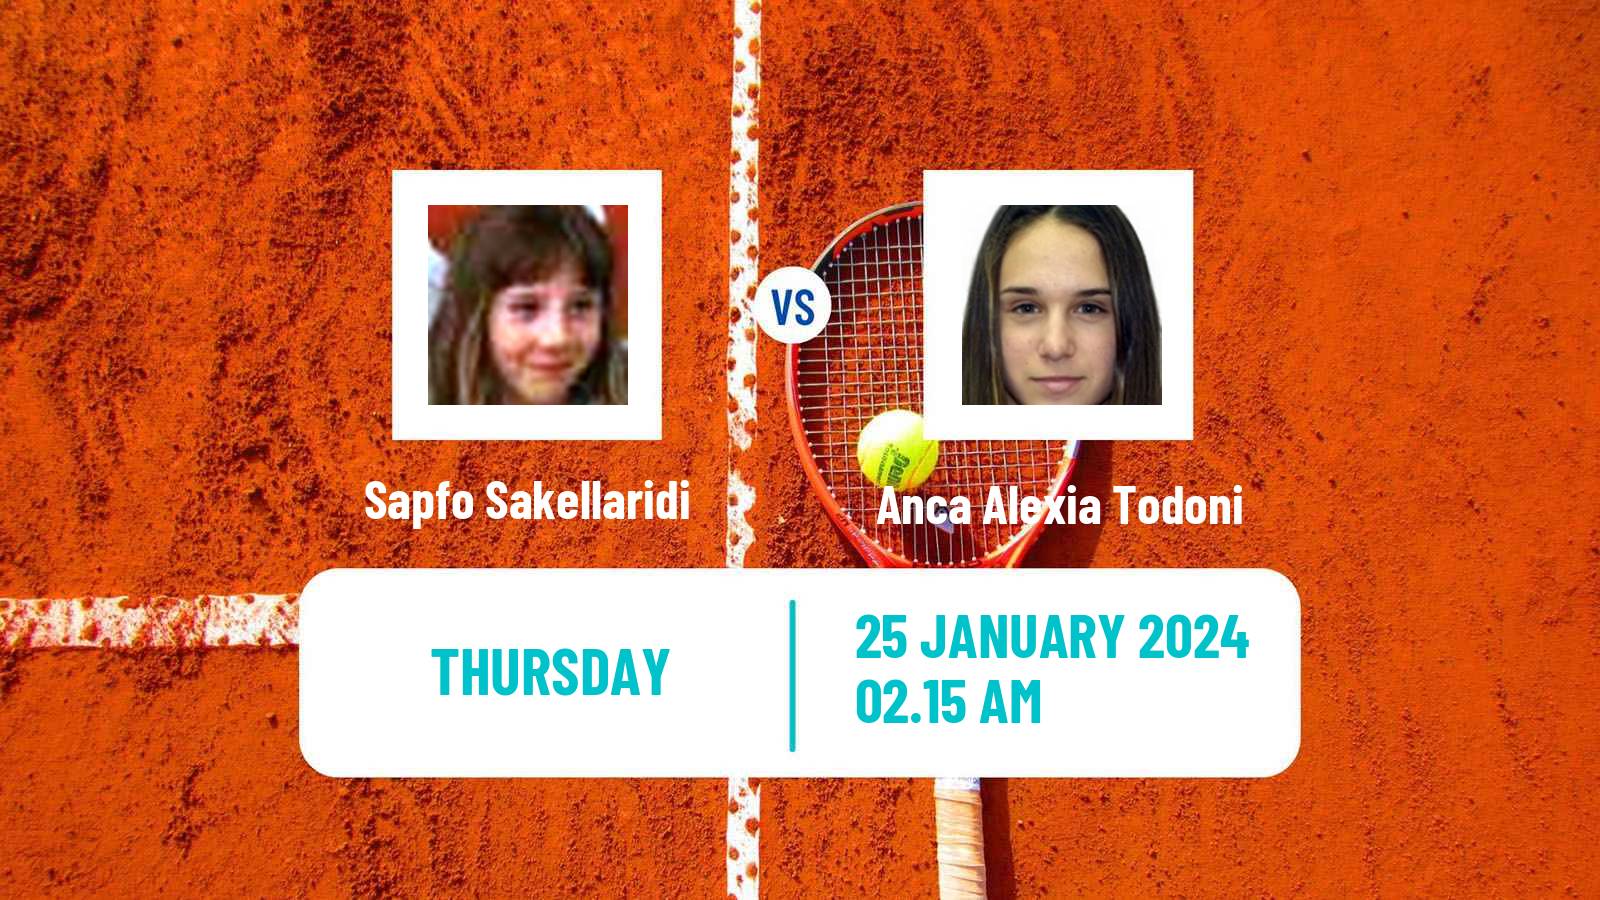 Tennis ITF W50 Pune Women Sapfo Sakellaridi - Anca Alexia Todoni